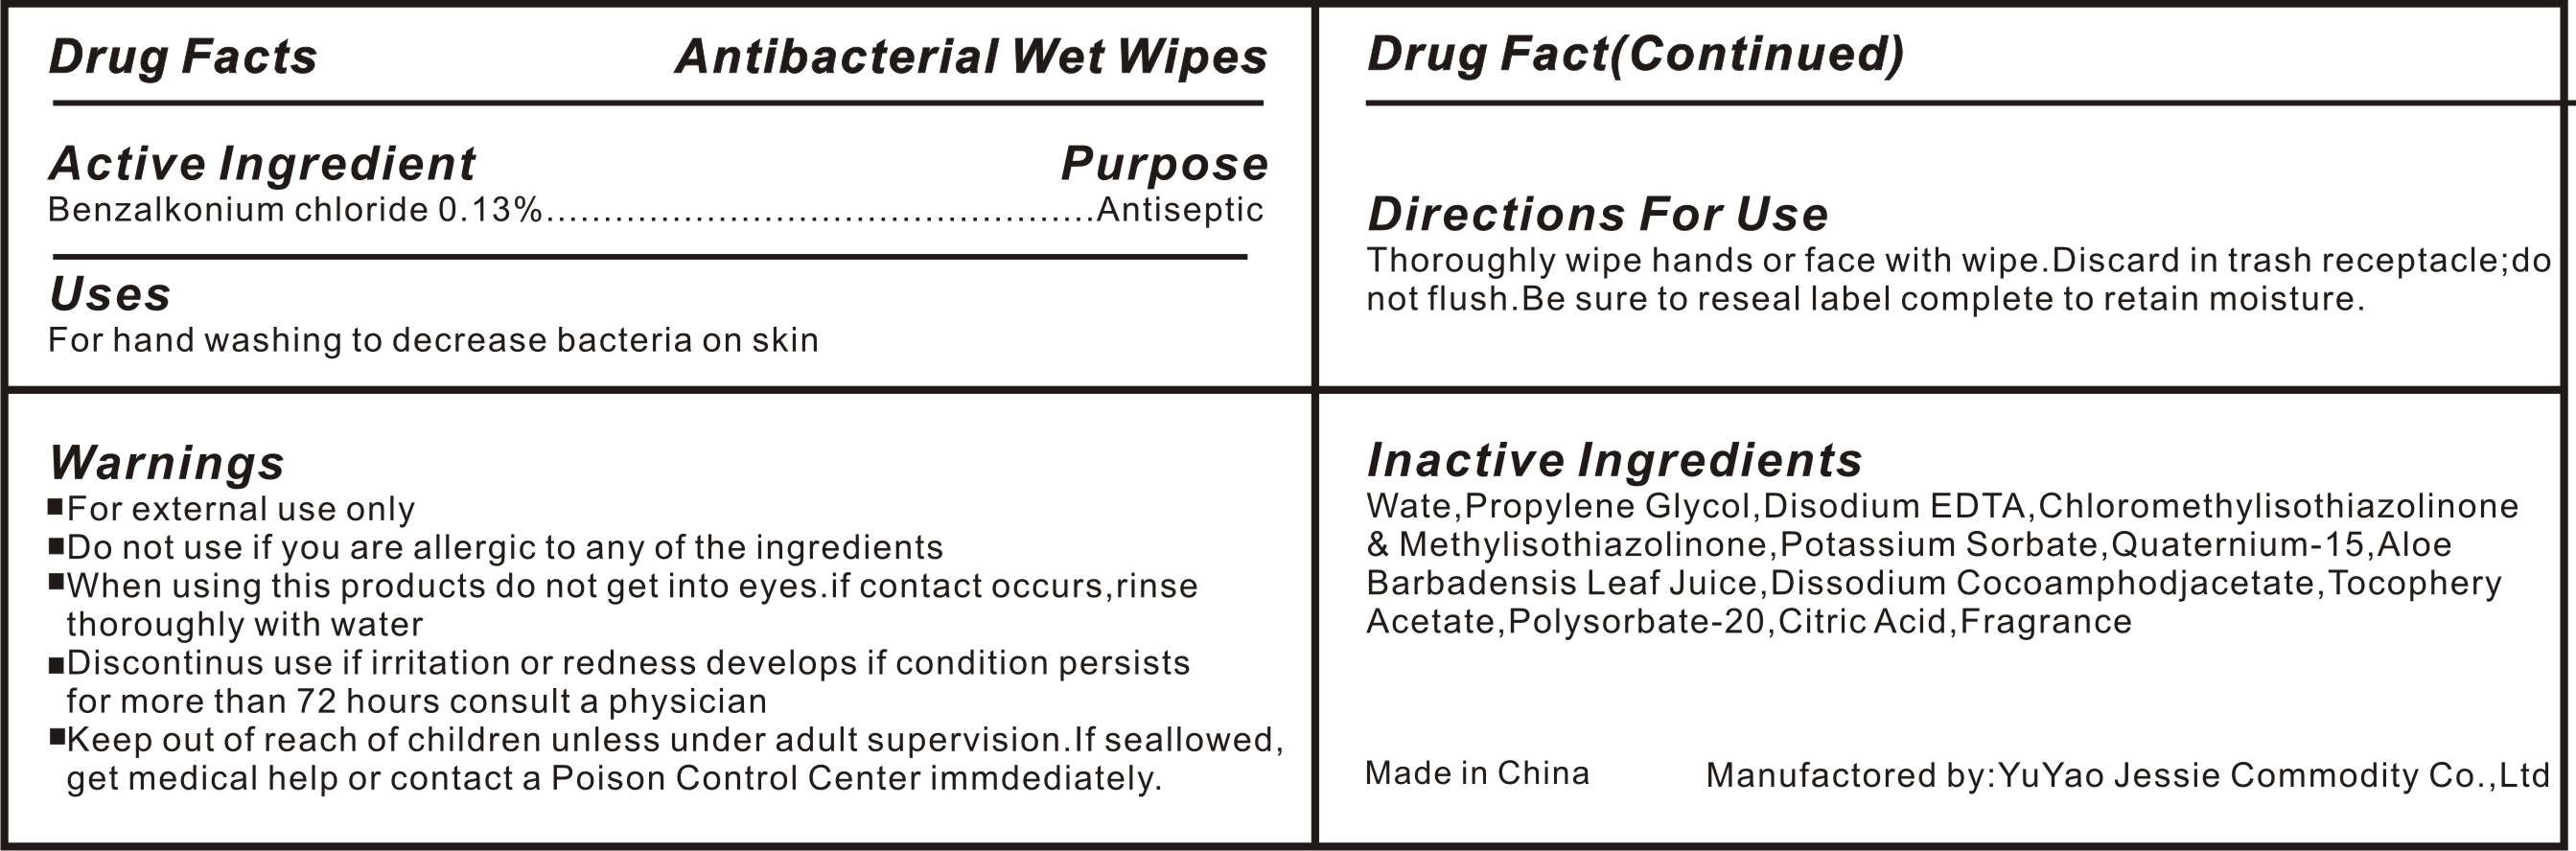 antibacterial wet wipes